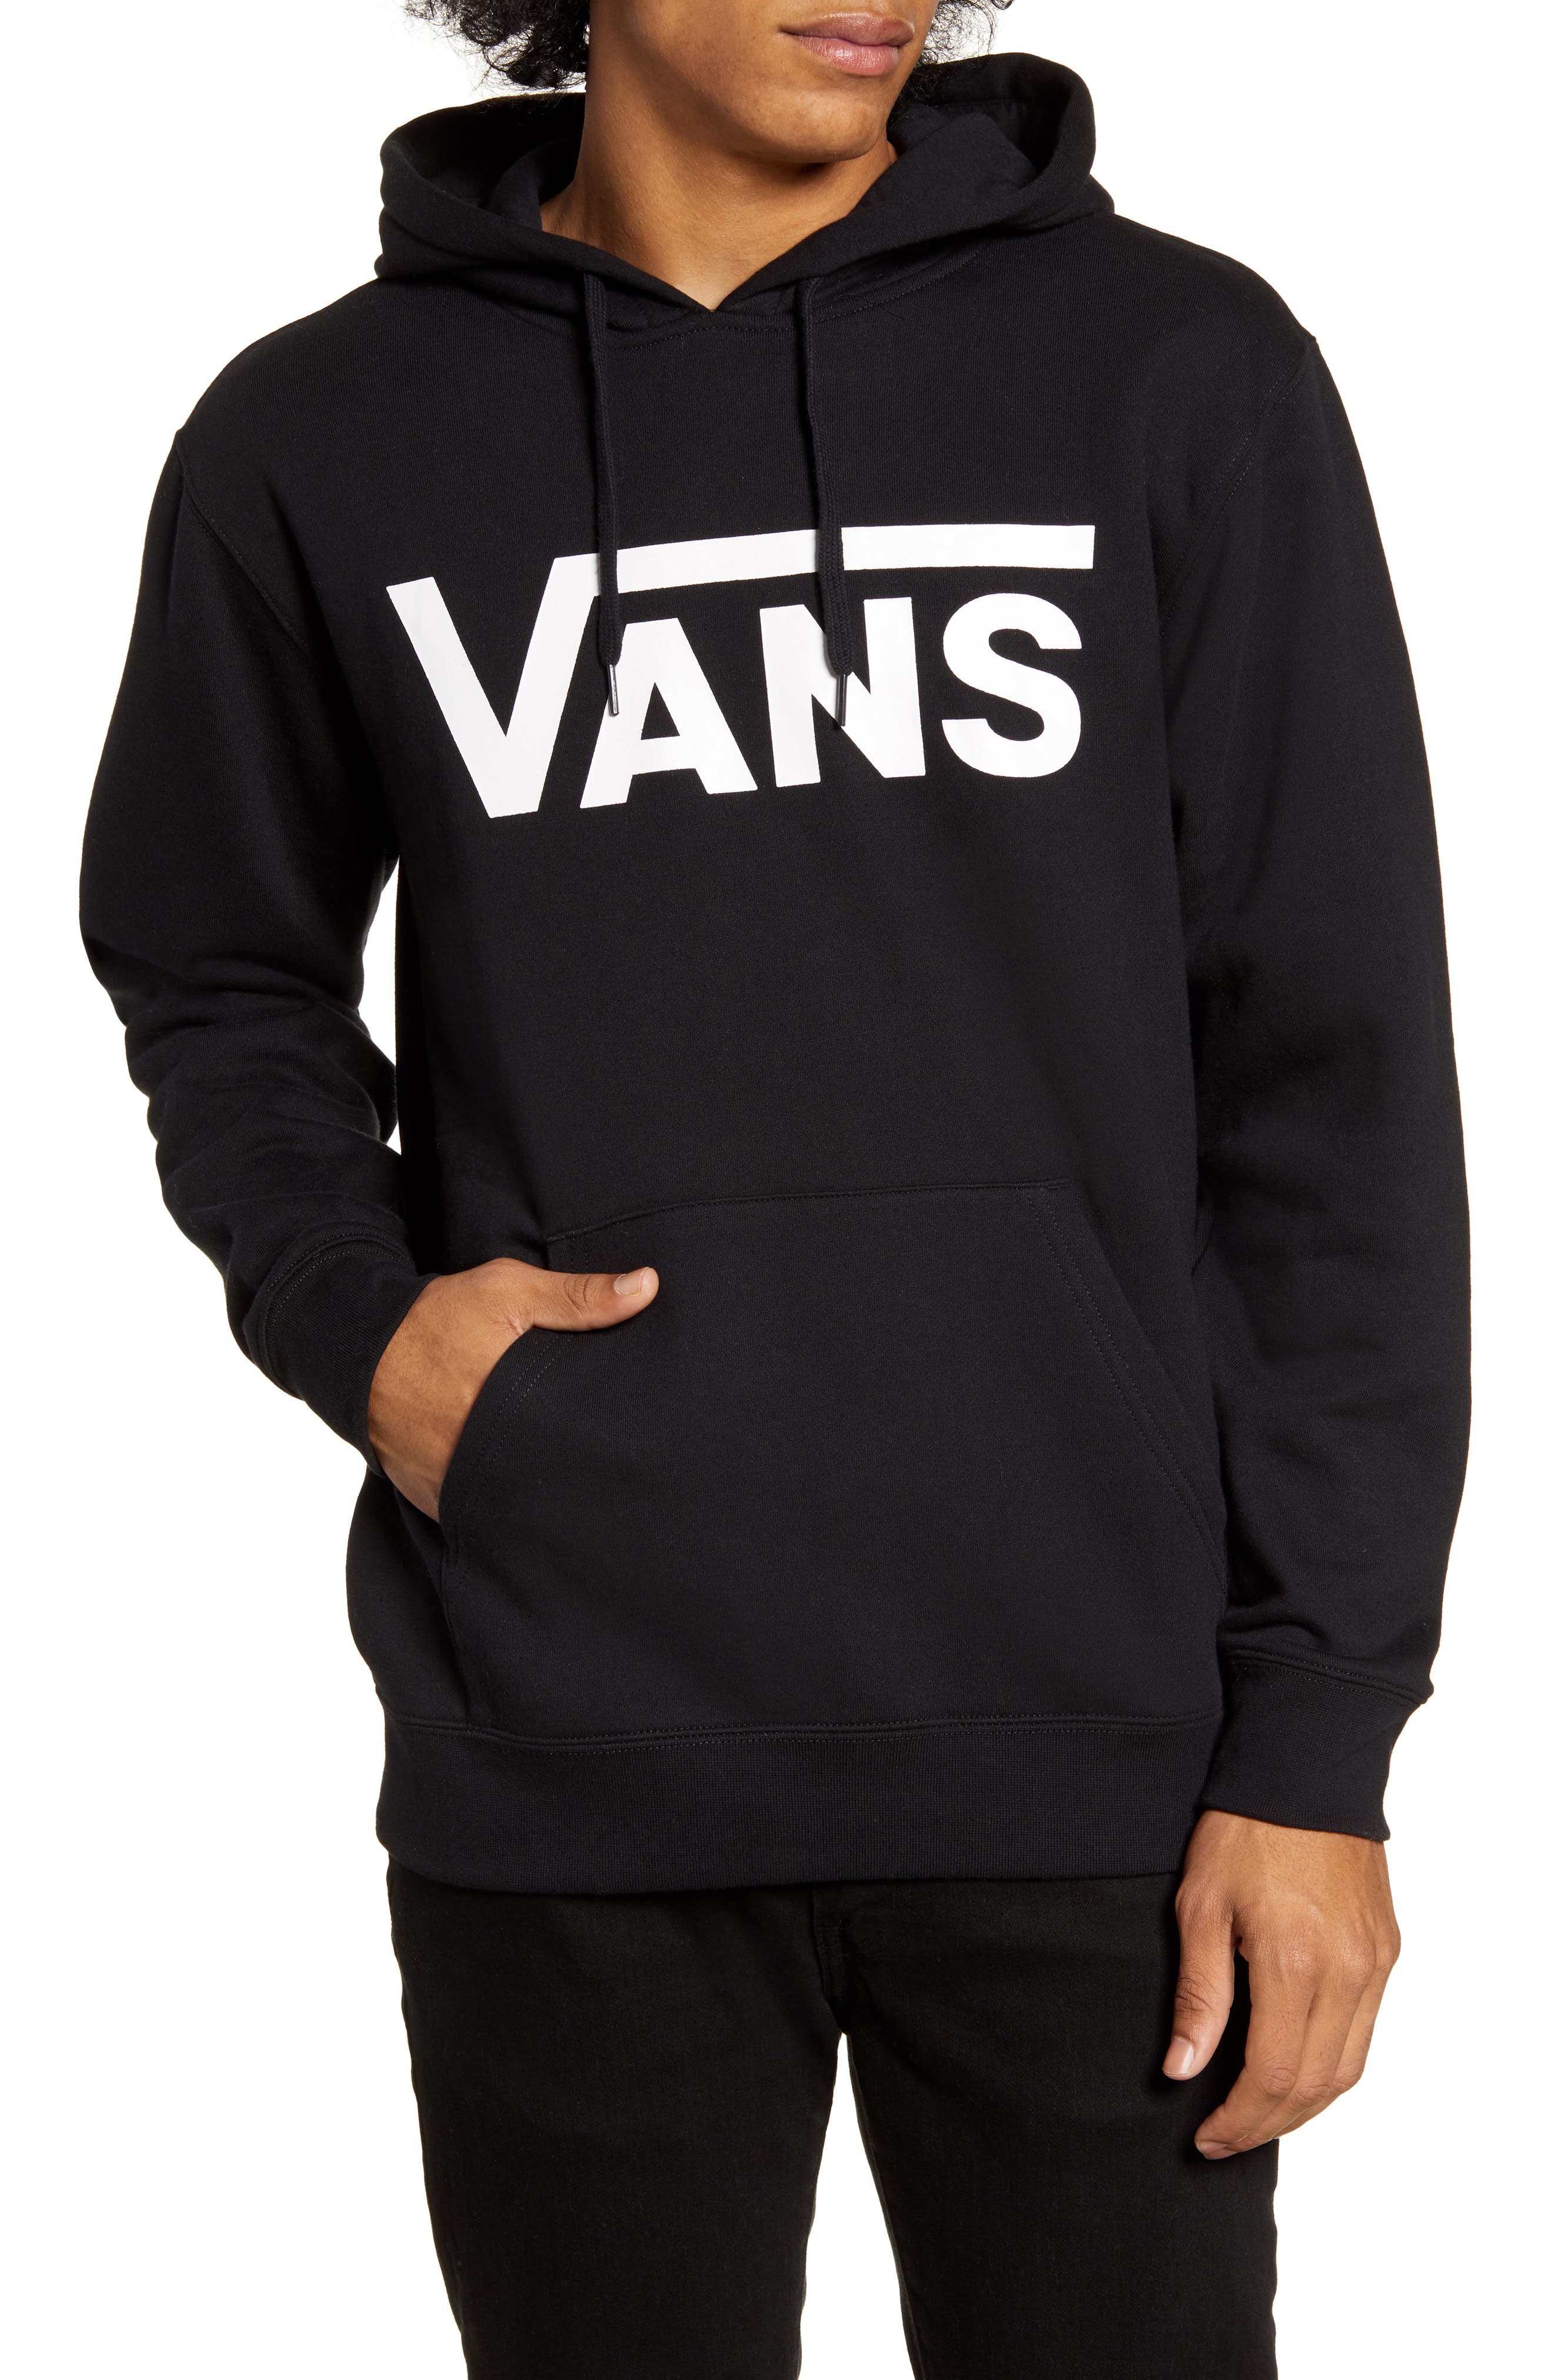 black and white vans sweatshirt